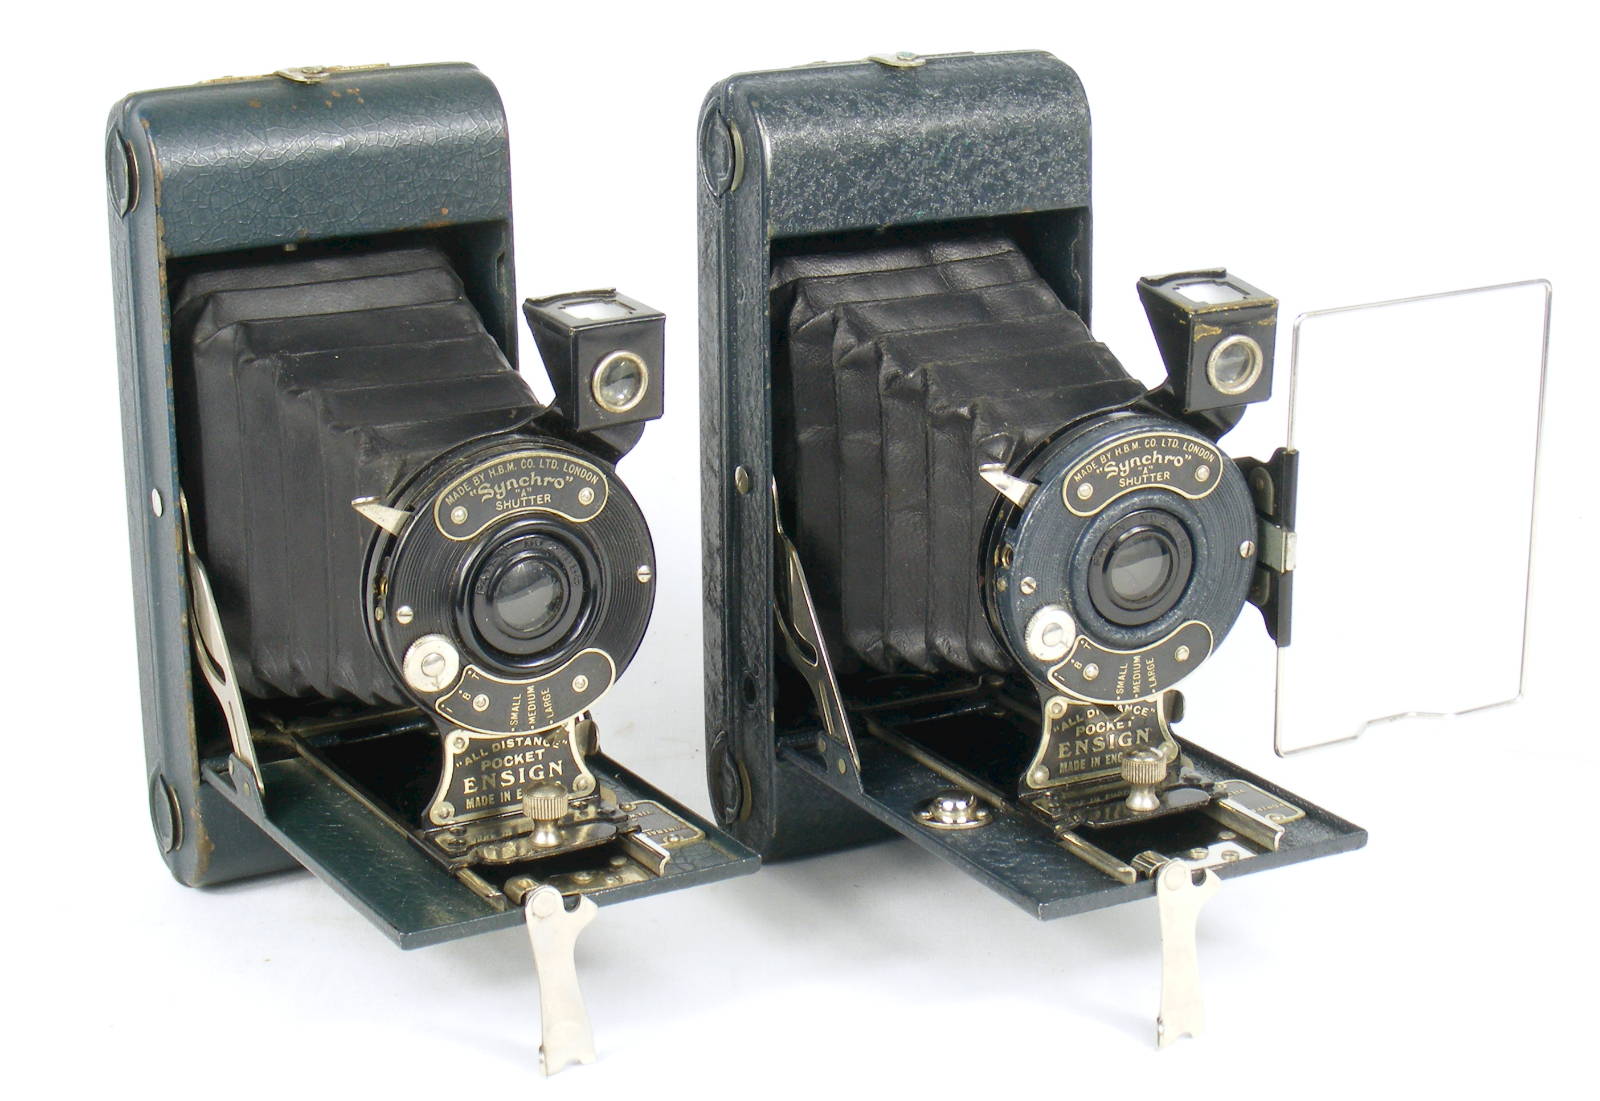 Image of All Distance Pocket Ensign Folding Camera (blue variants)